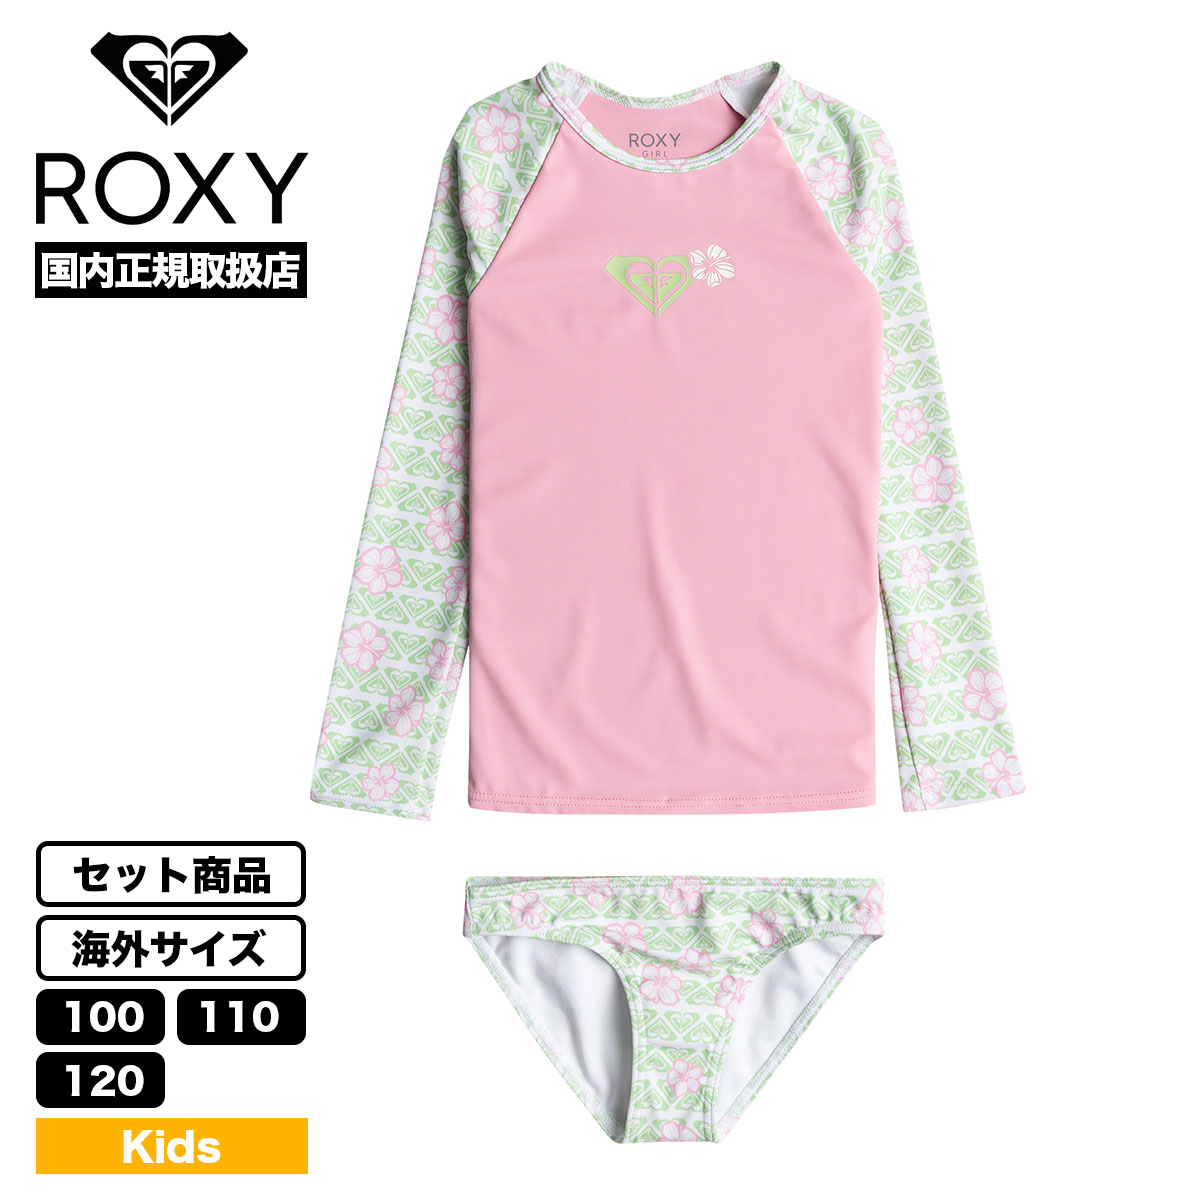 ROXY ロキシー キッズ ラッシュガード セット 子供 水着 タンキニ ピンク 花柄 100cm ...